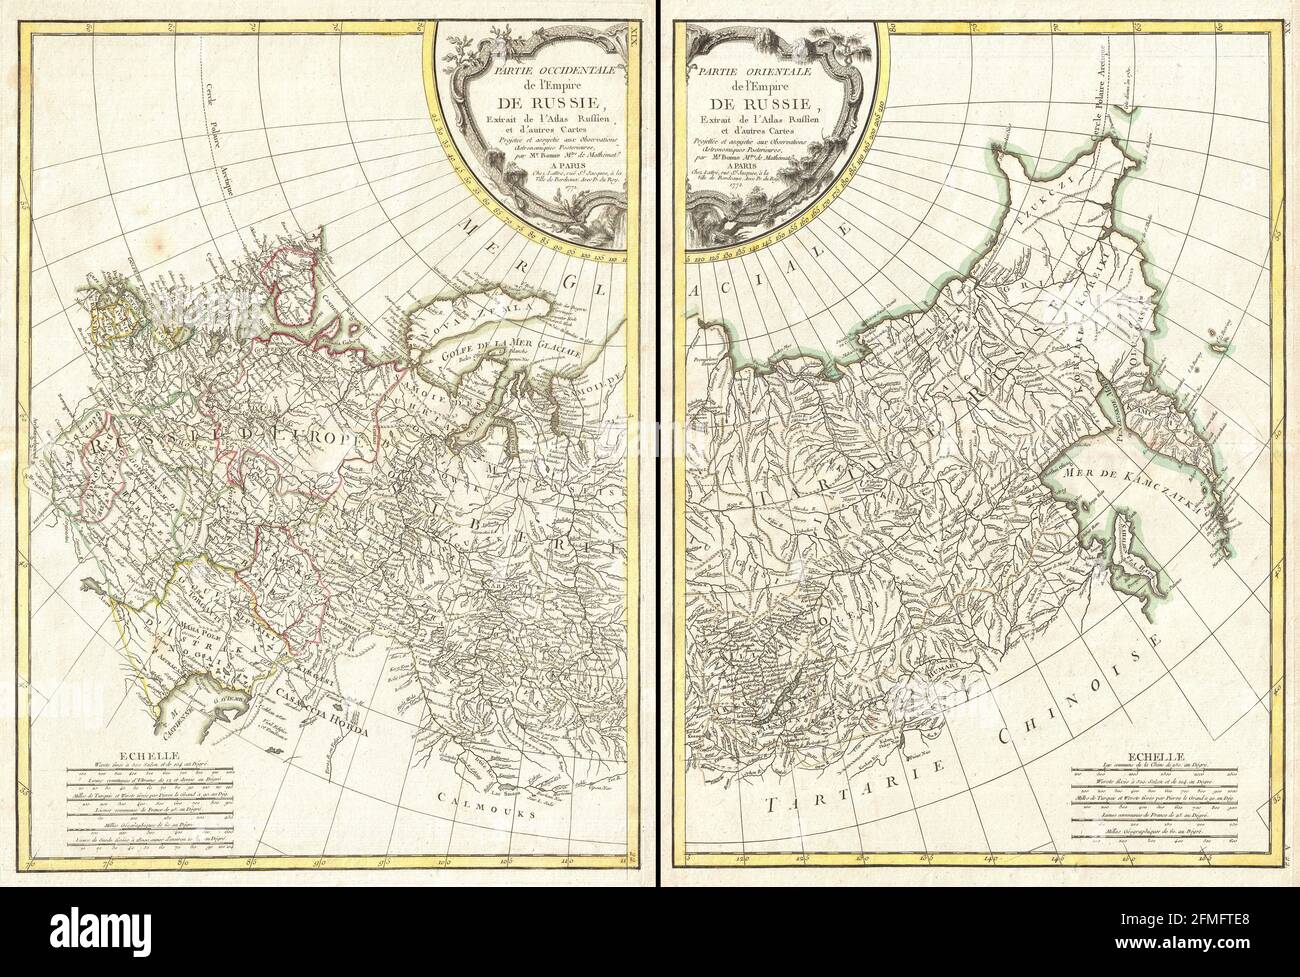 Carte ancienne en cuivre gravée de la Russie du XVIIIe siècle. Toutes les cartes sont magnifiquement colorées et illustrées montrant le monde à l'époque. Banque D'Images